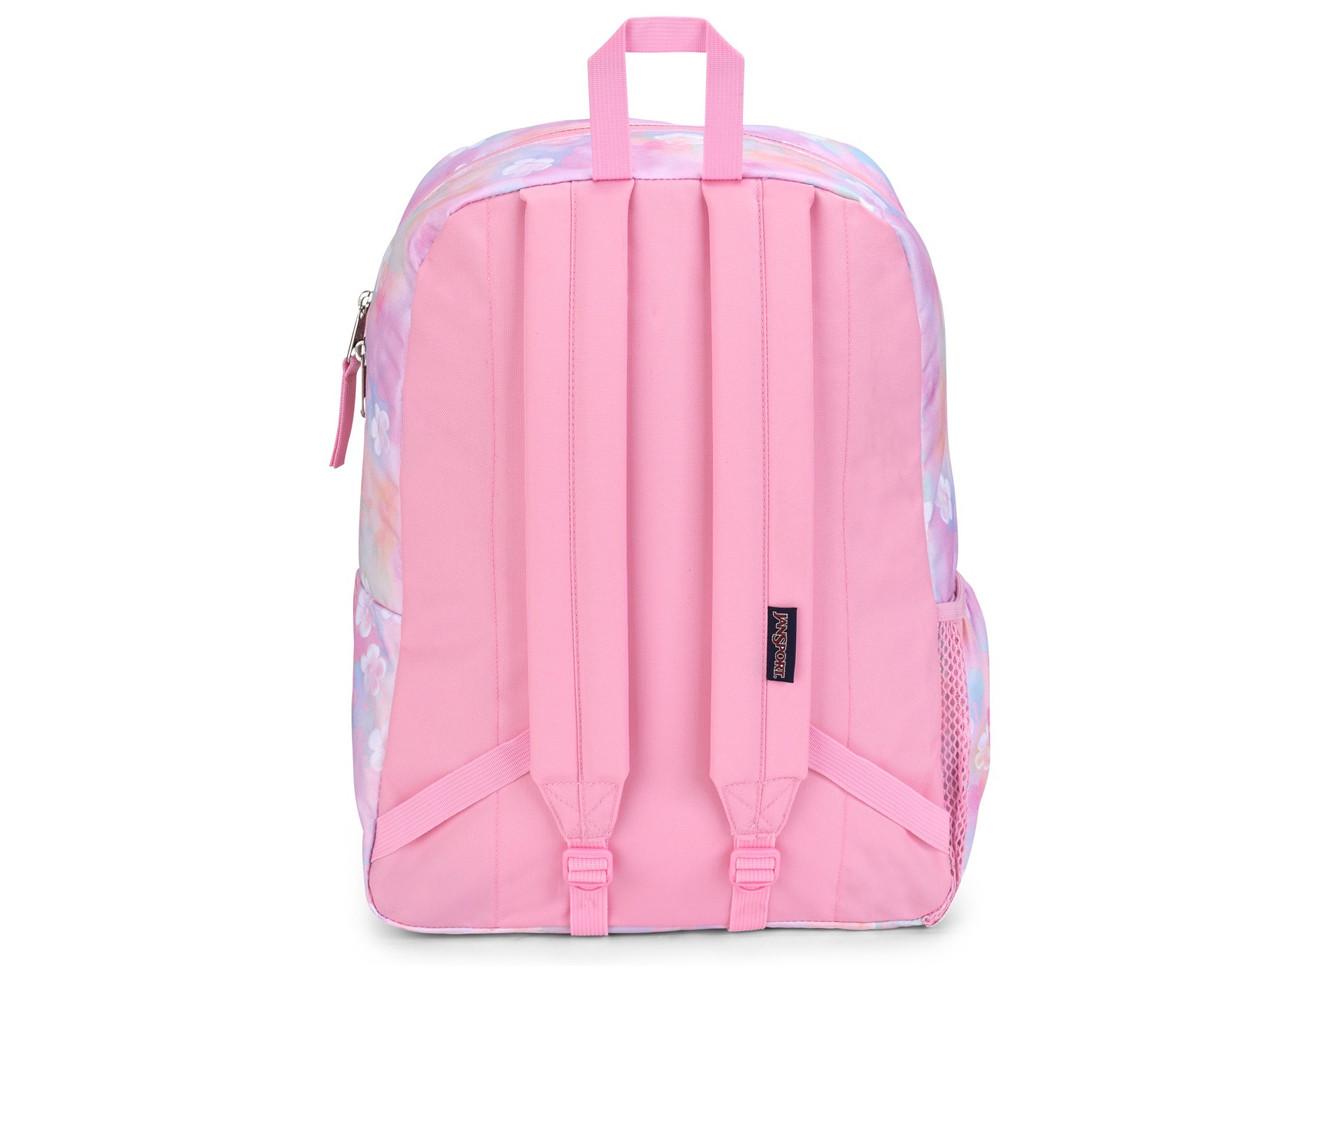 Jansport Sportbags Crosstown Backpack